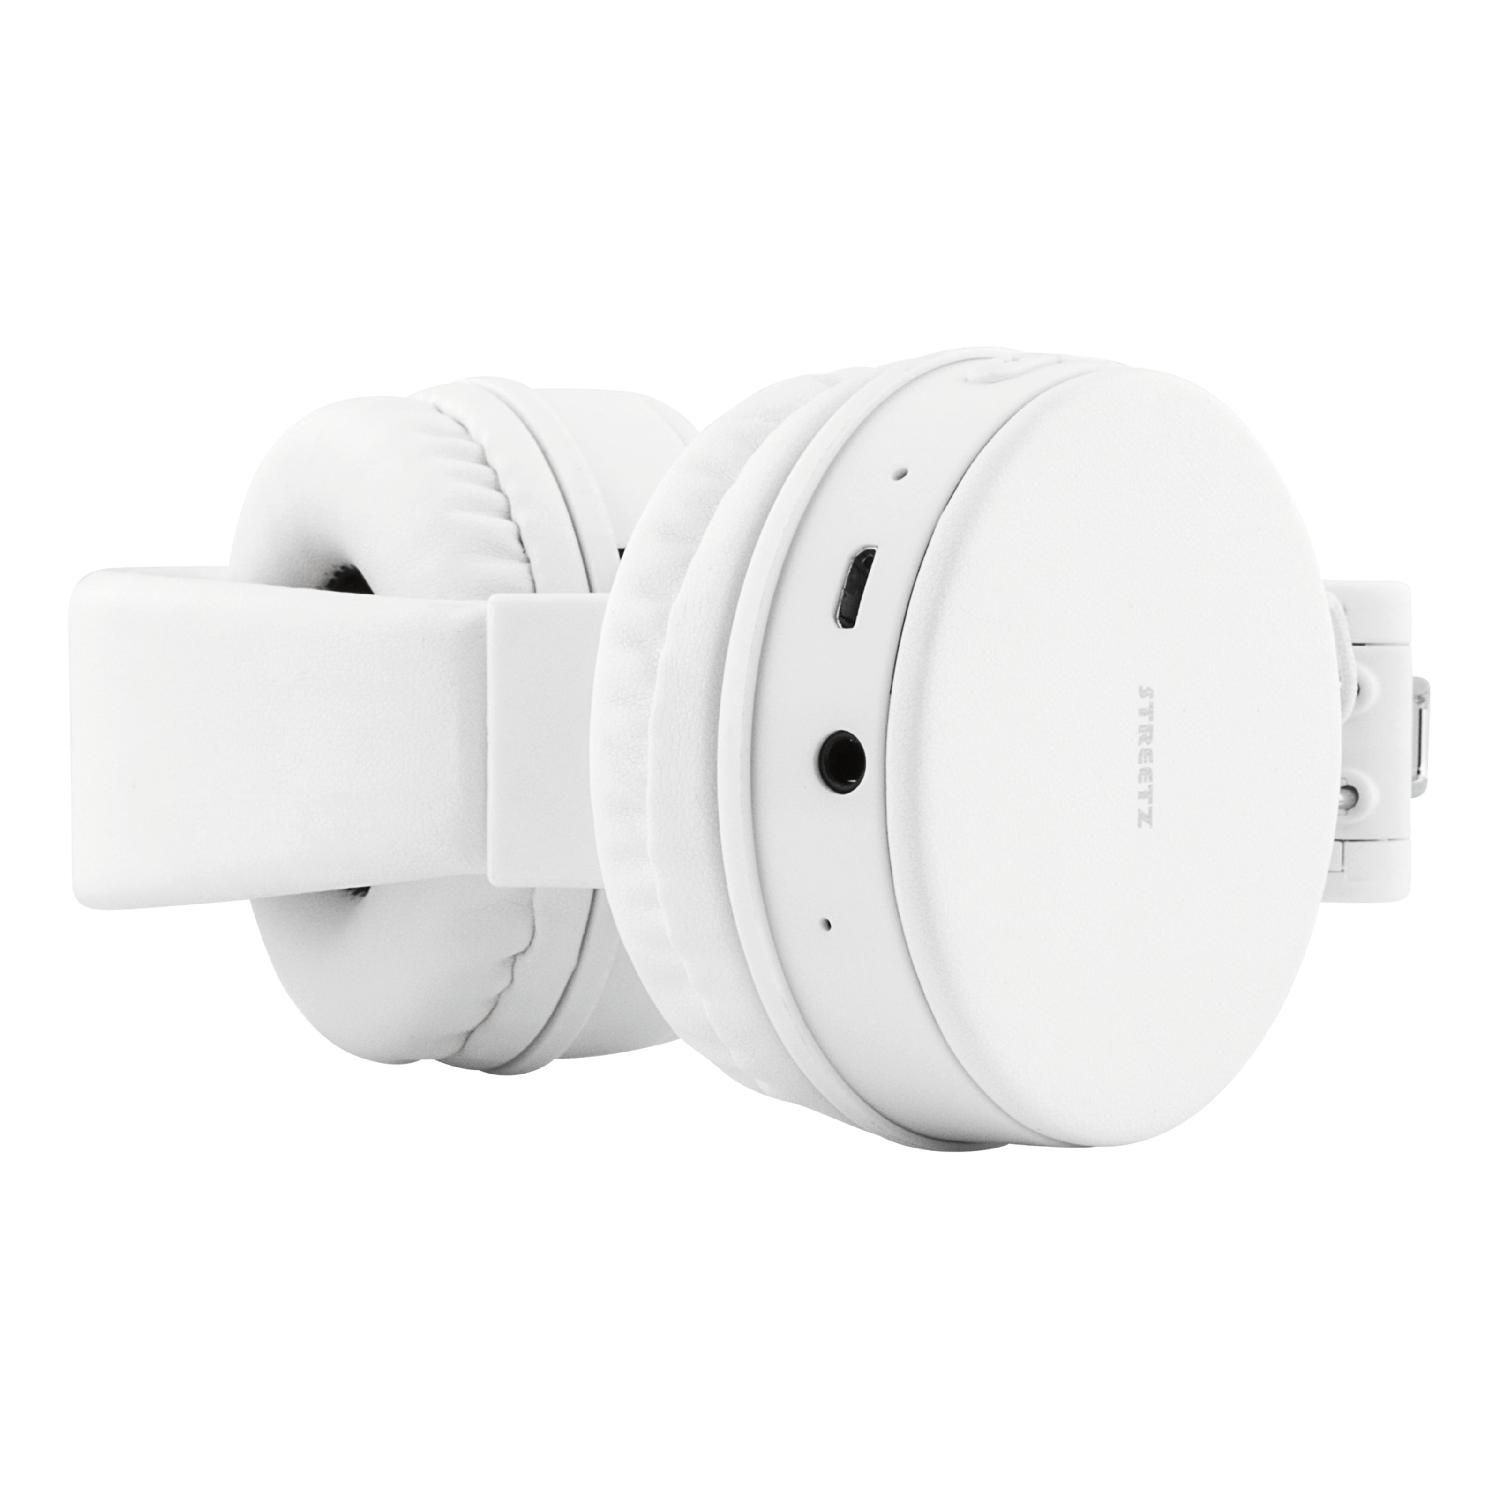 STREETZ Bluetooth Kopfhörer, faltbar, Over-ear weiß Kopfhörer